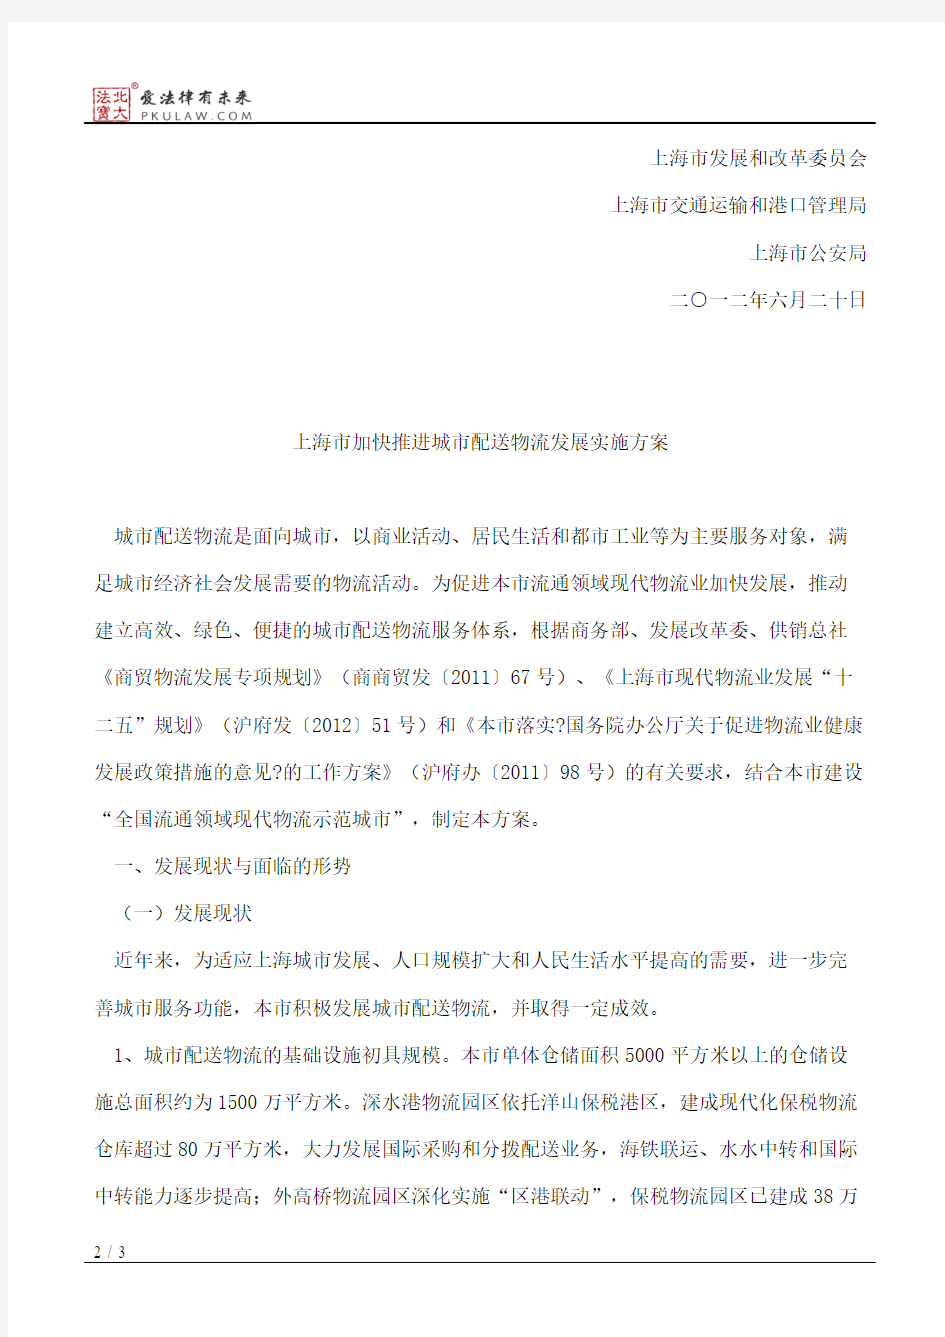 上海市商务委员会、上海市发展和改革委员会、上海市交通运输和港